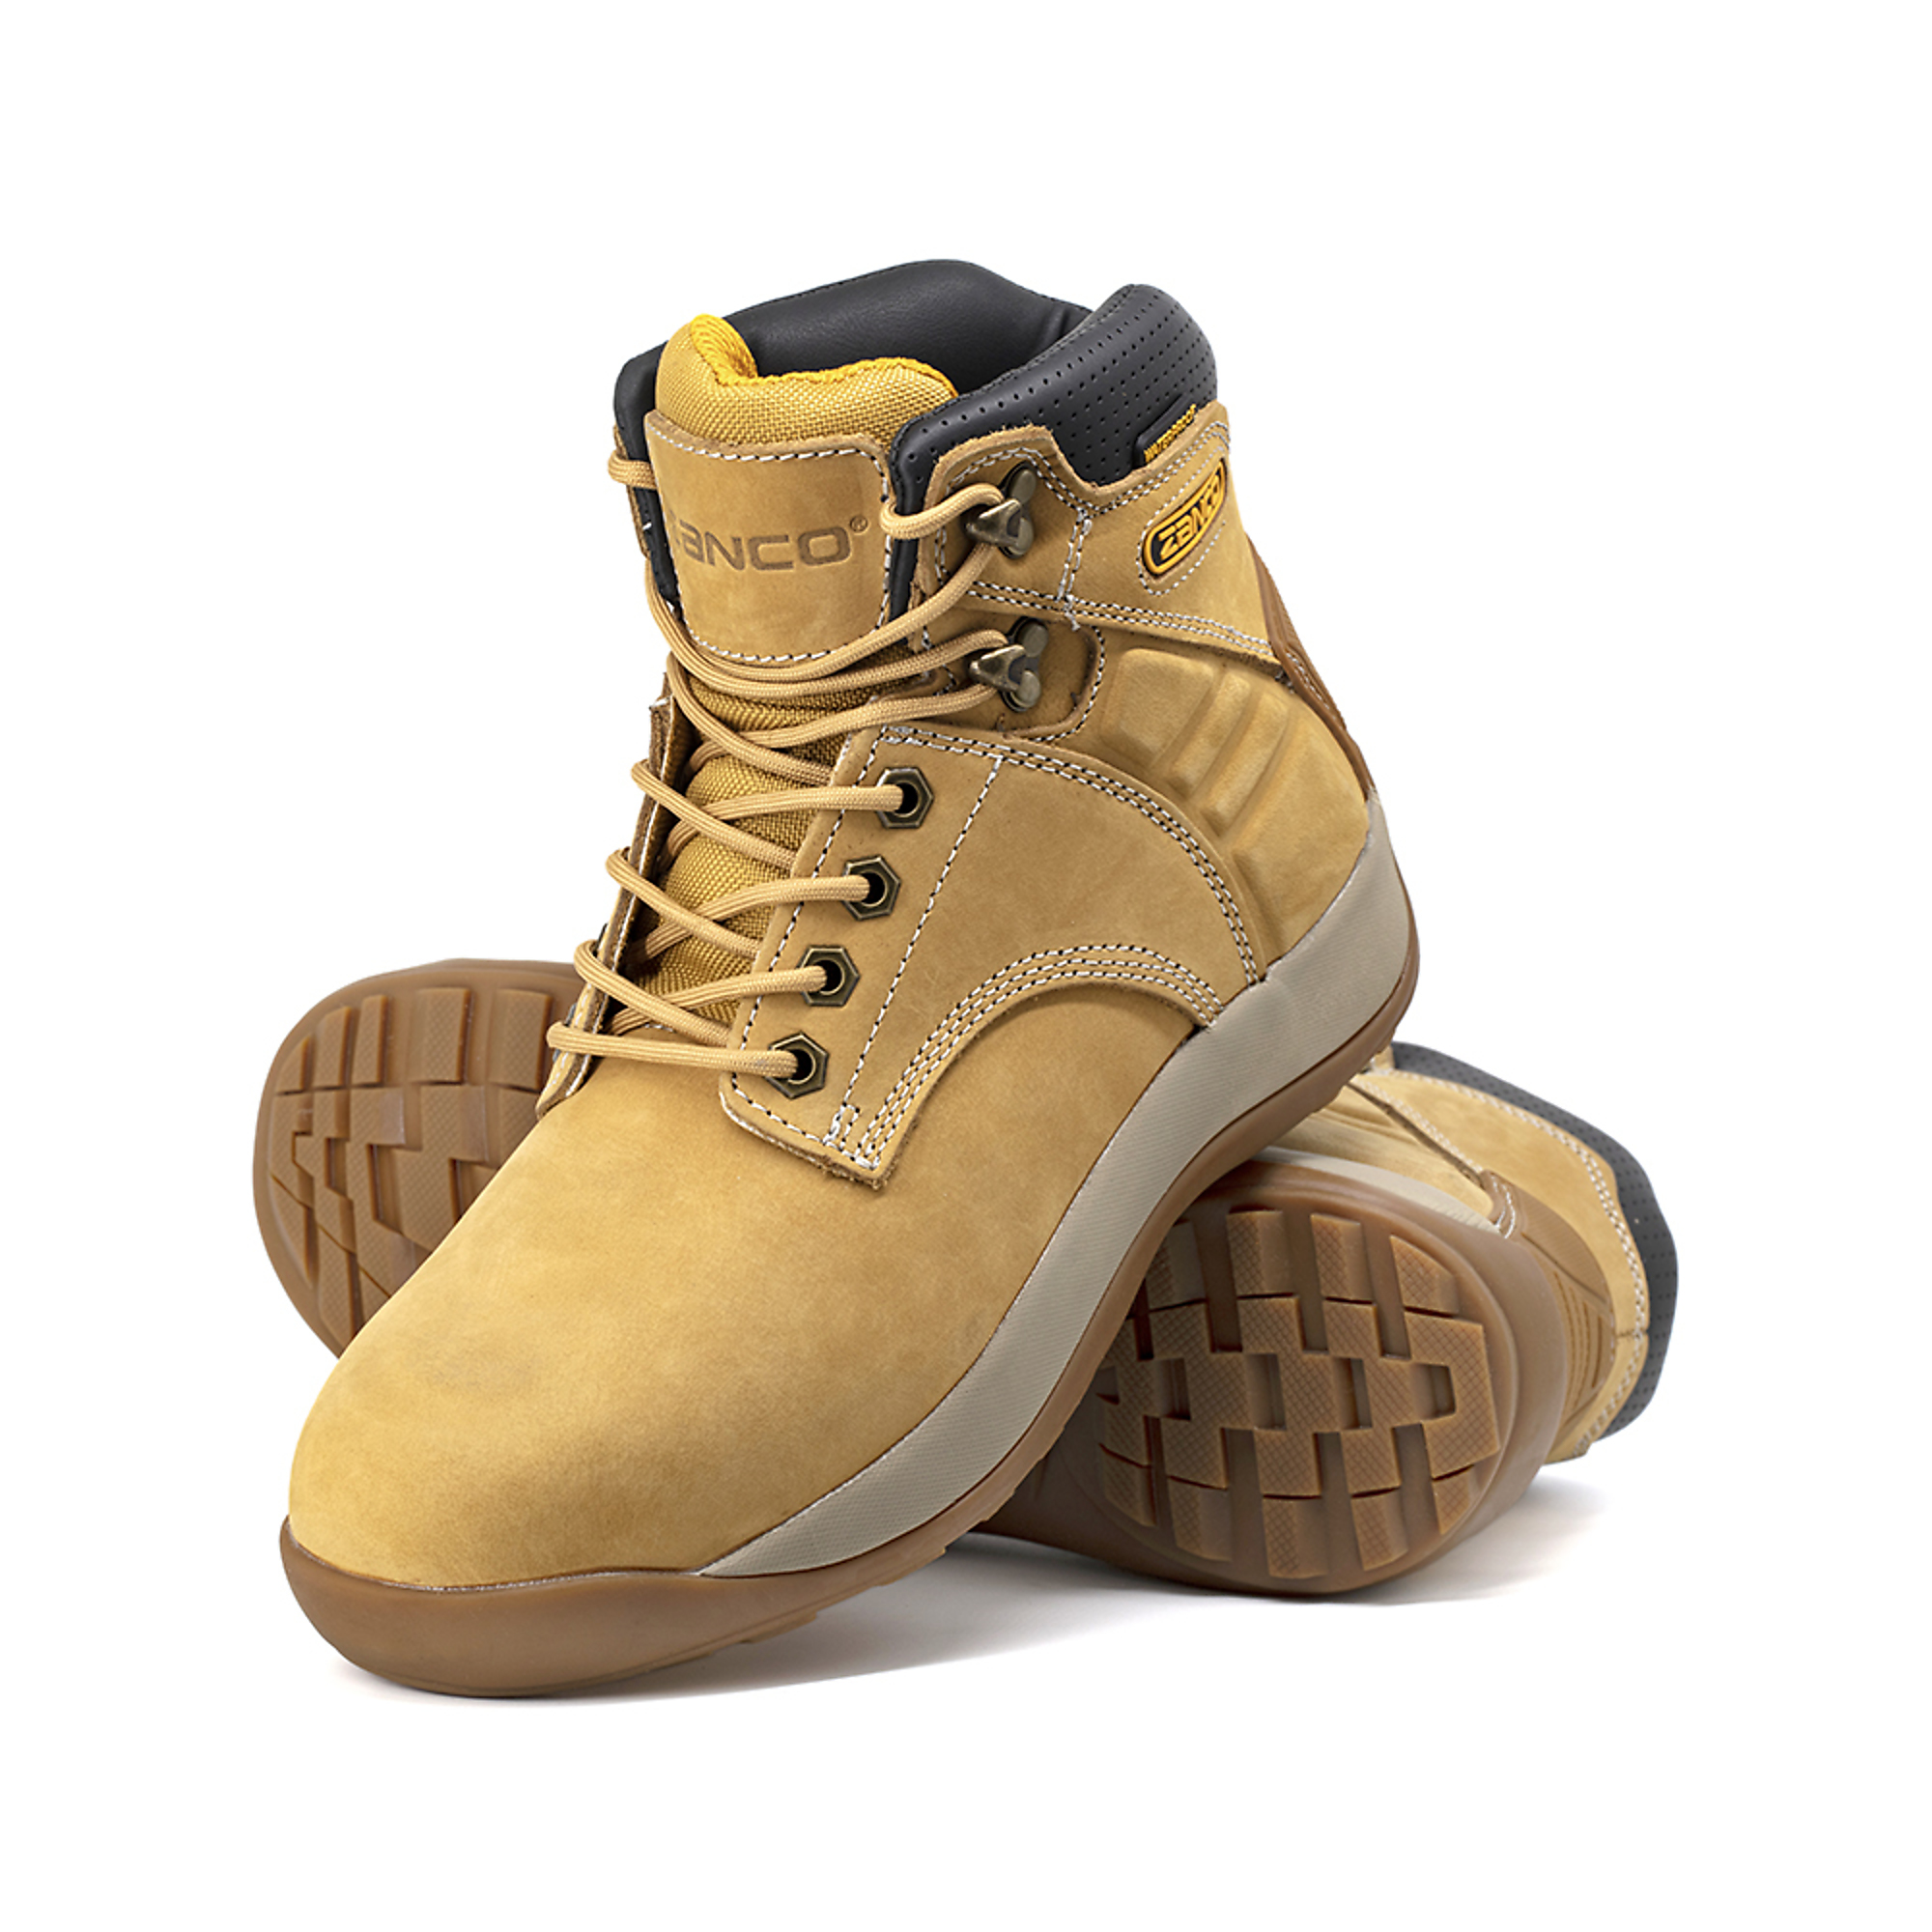 Zanco, Men's Waterproof,Steel toe,EH,Safety boots, Size 9 1/2, Width Medium, Color WHEAT, Model 8236-16-9.5